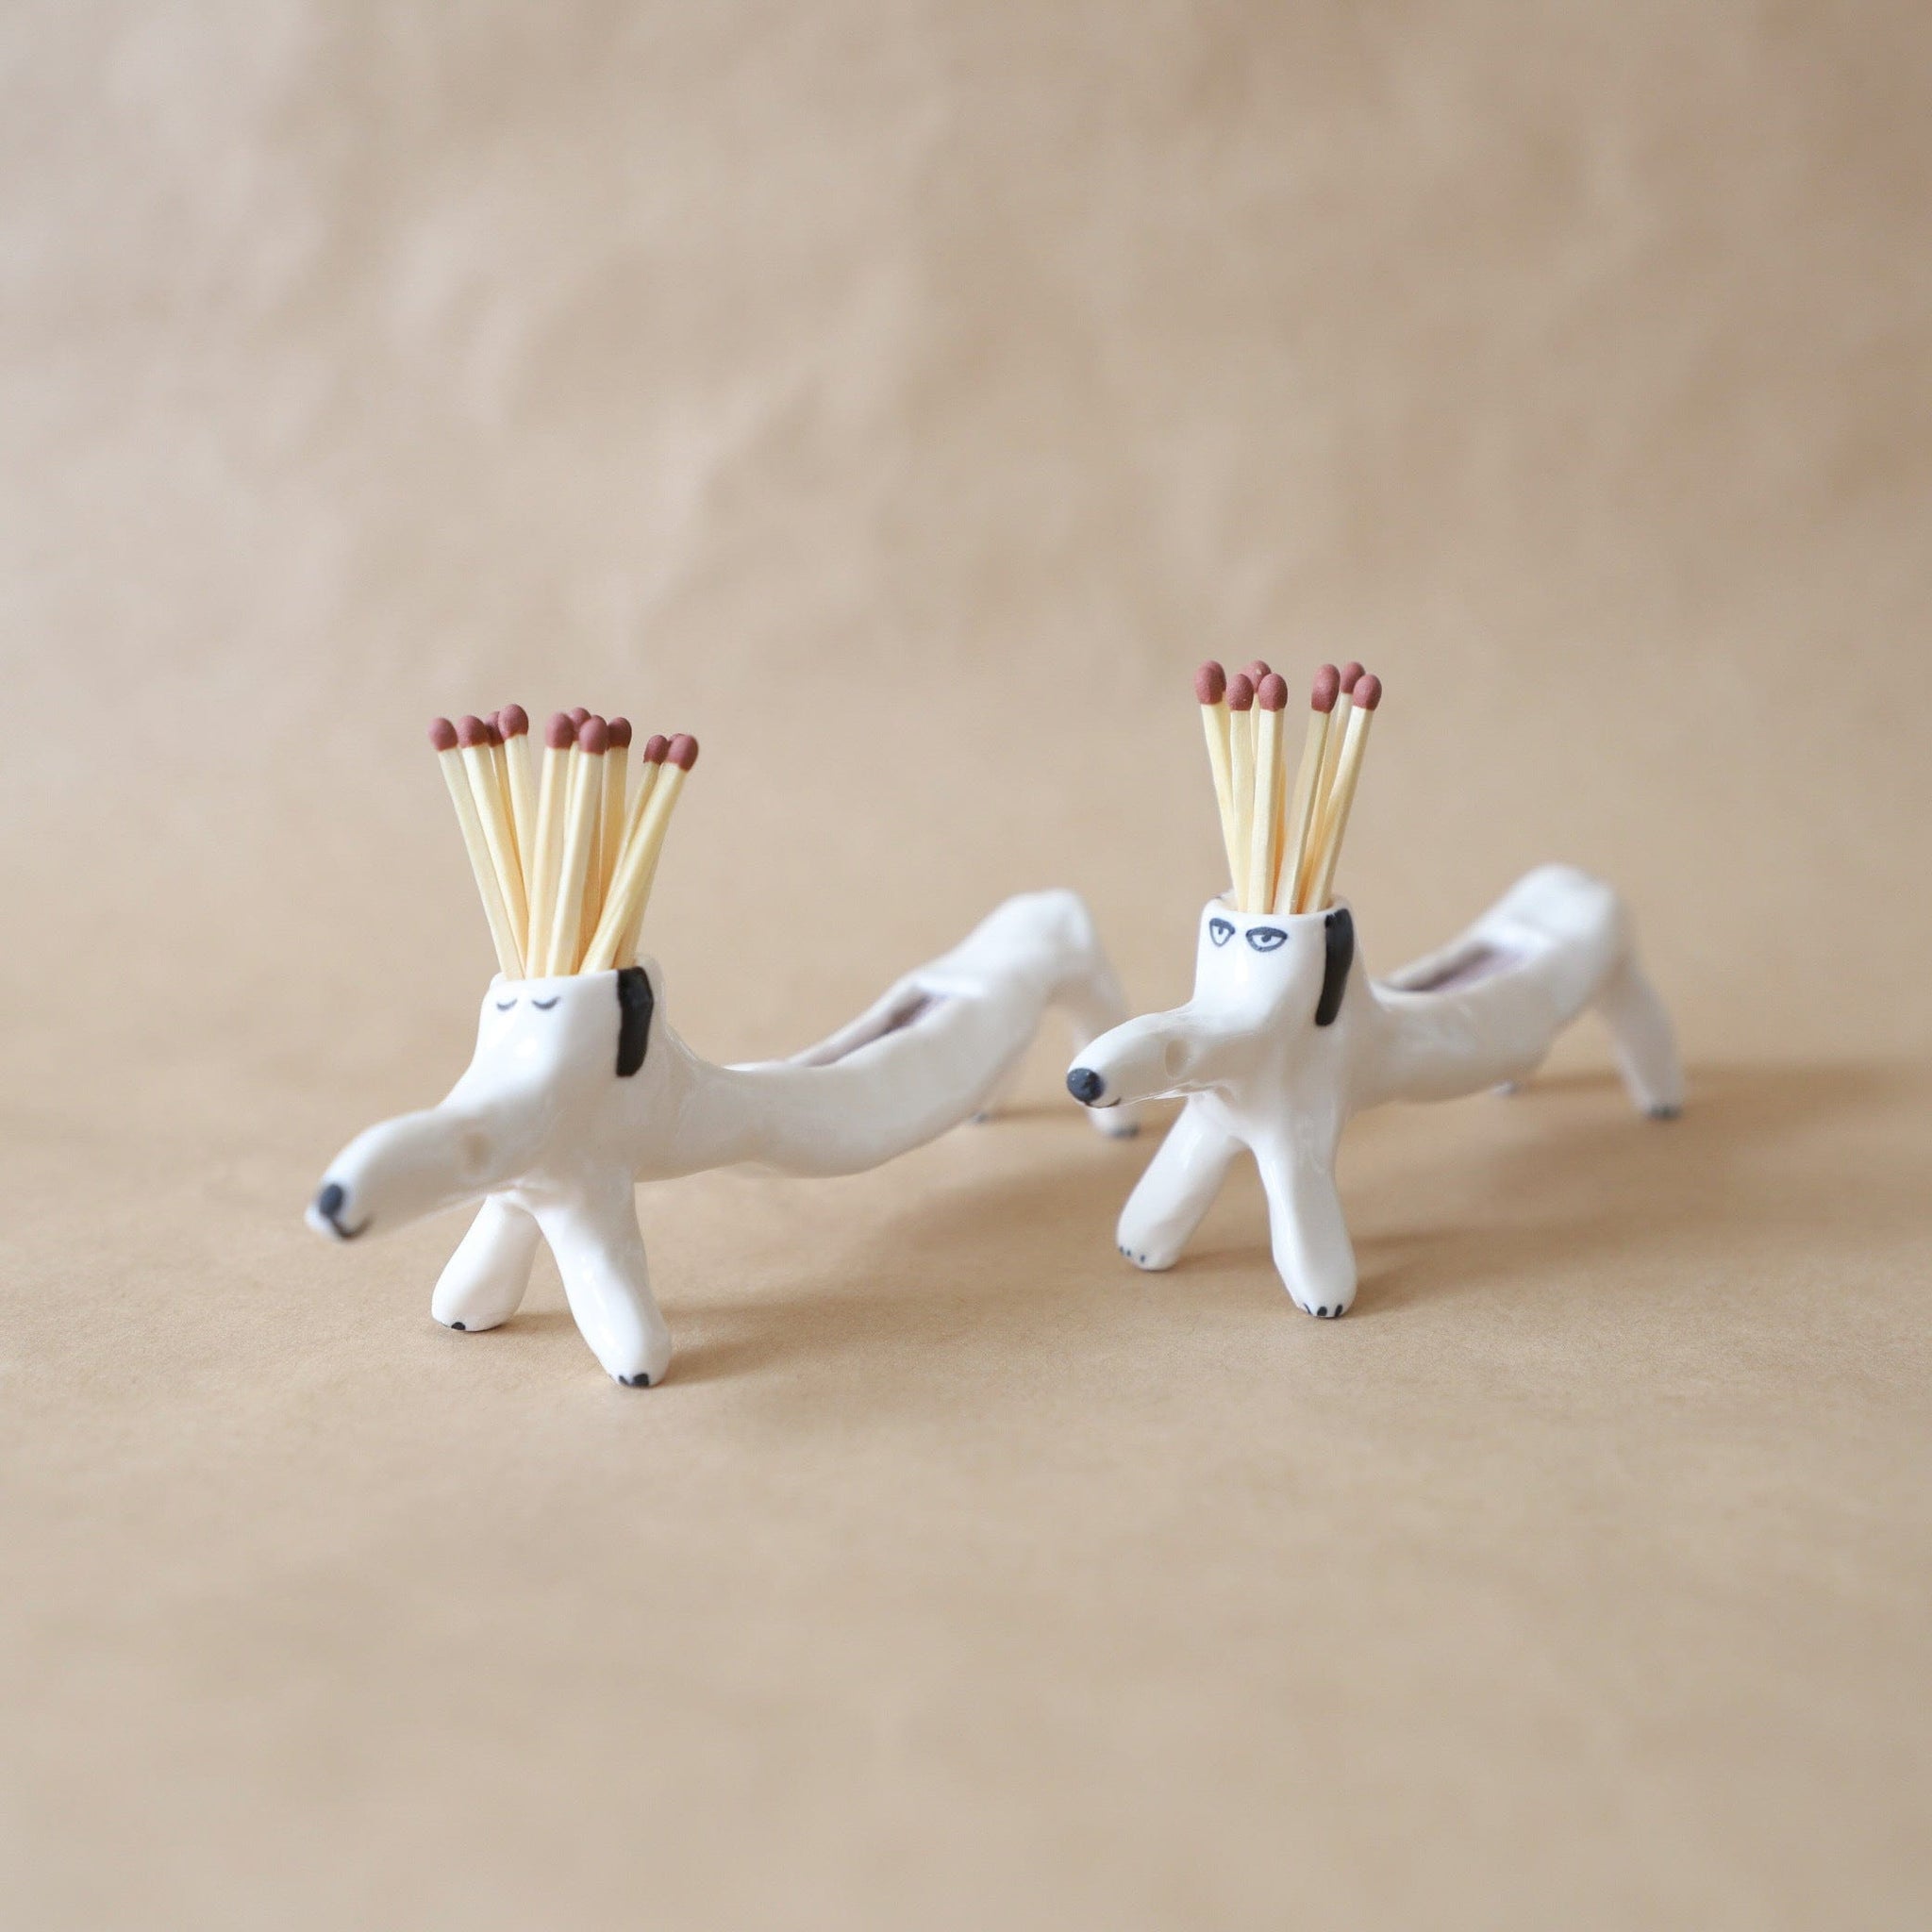 Eleonor Bostrom Ceramics Decor, Apothecary Dog Match Striker by Eleonor Bostrom